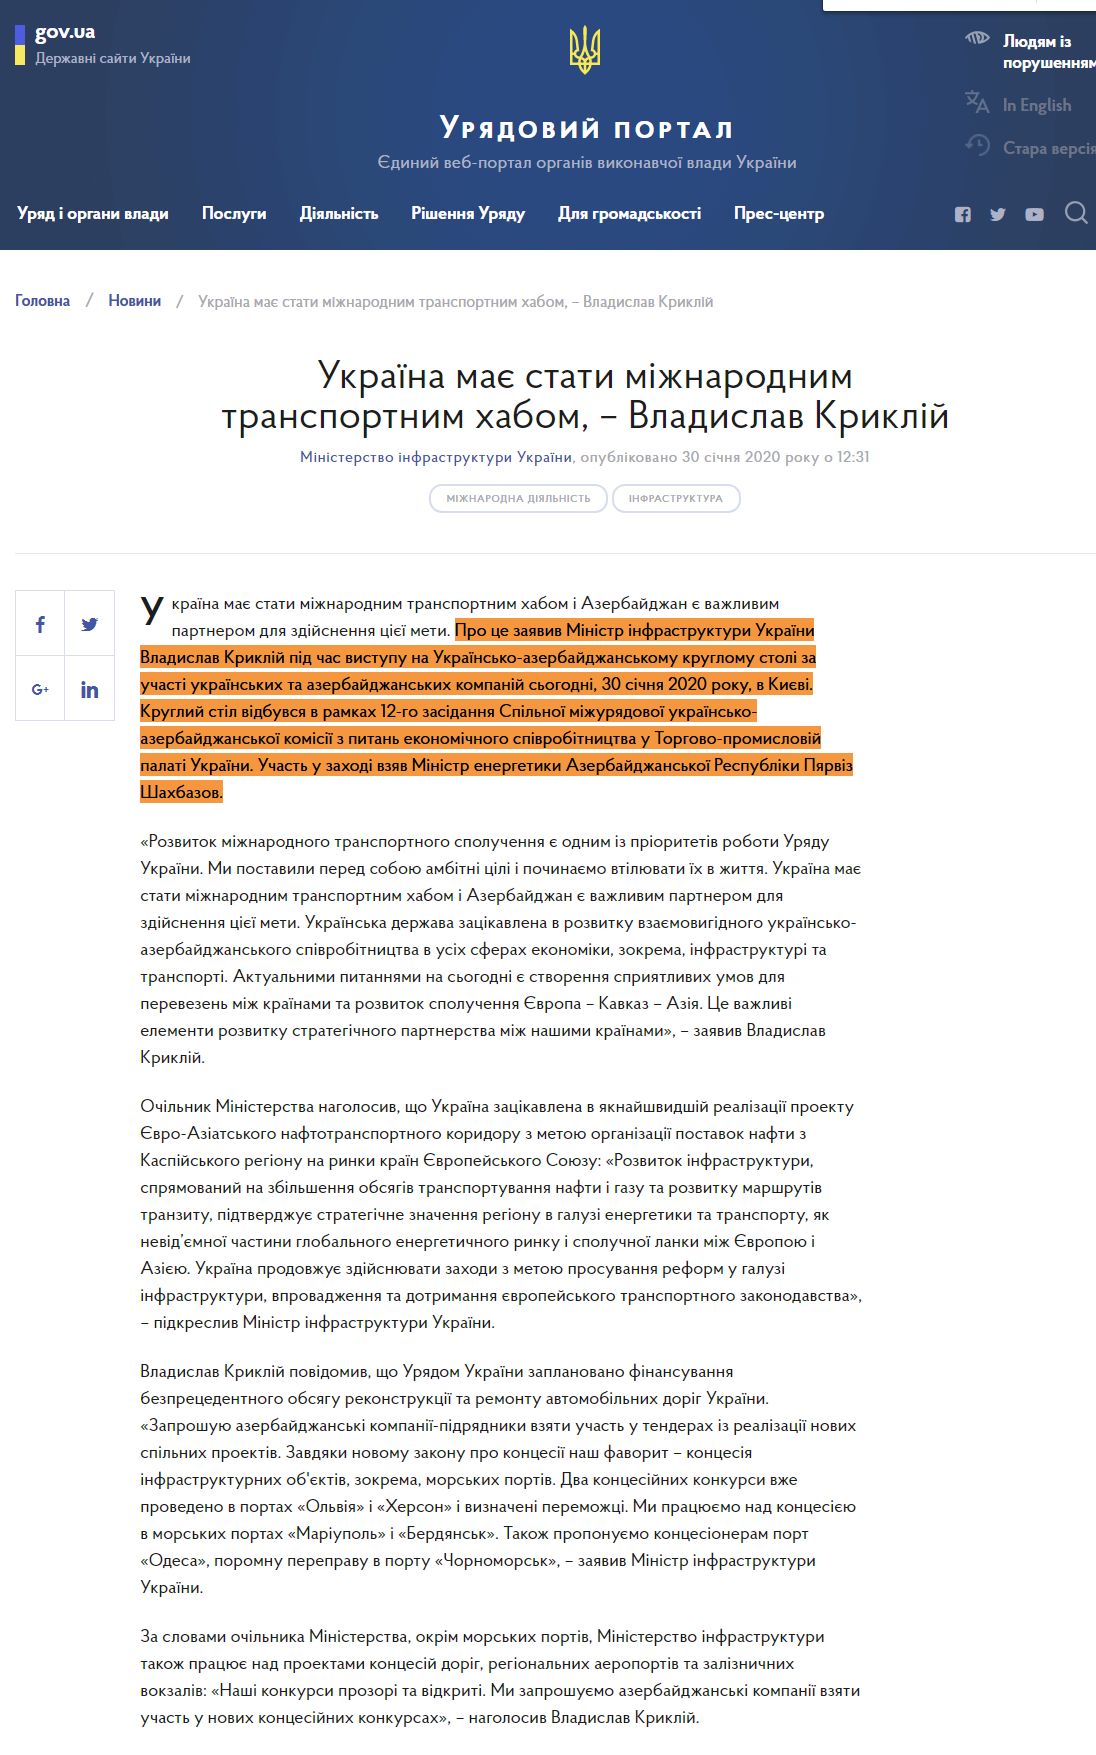 https://www.kmu.gov.ua/news/ukrayina-maye-stati-mizhnarodnim-transportnim-habom-vladislav-kriklij